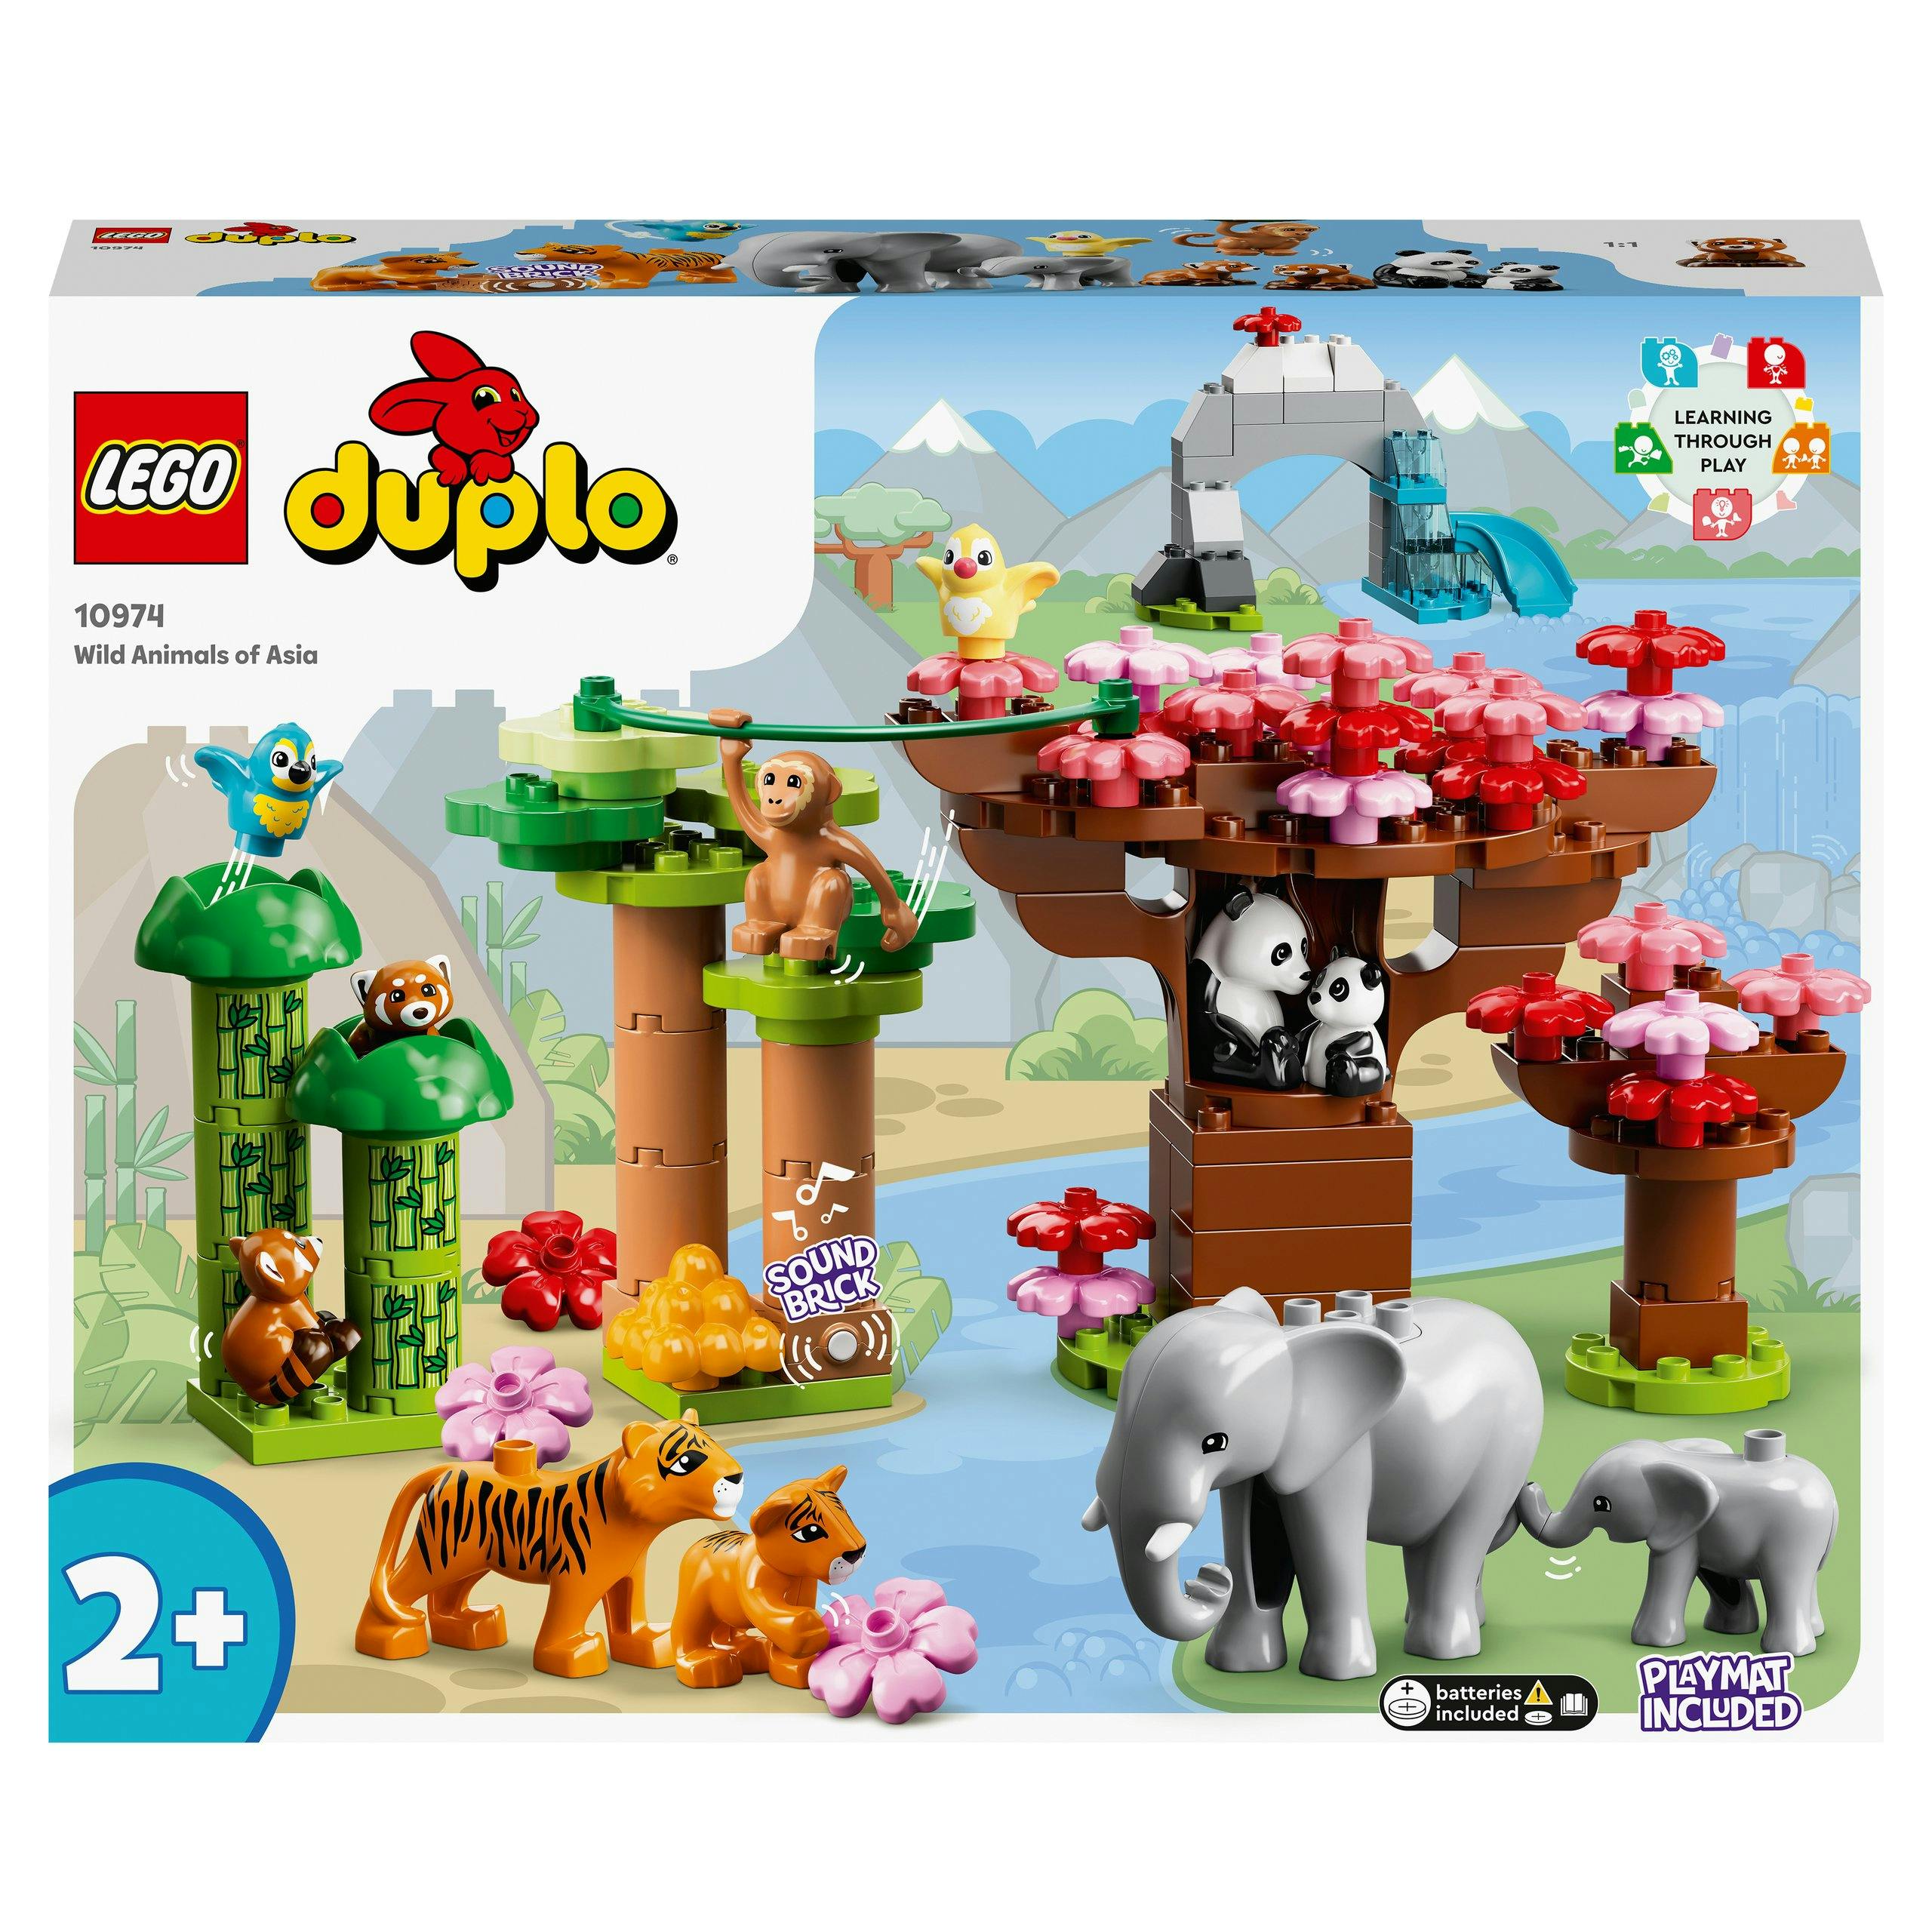 Pièces De Lego Duplo Sur Un Tapis Image stock éditorial - Image du